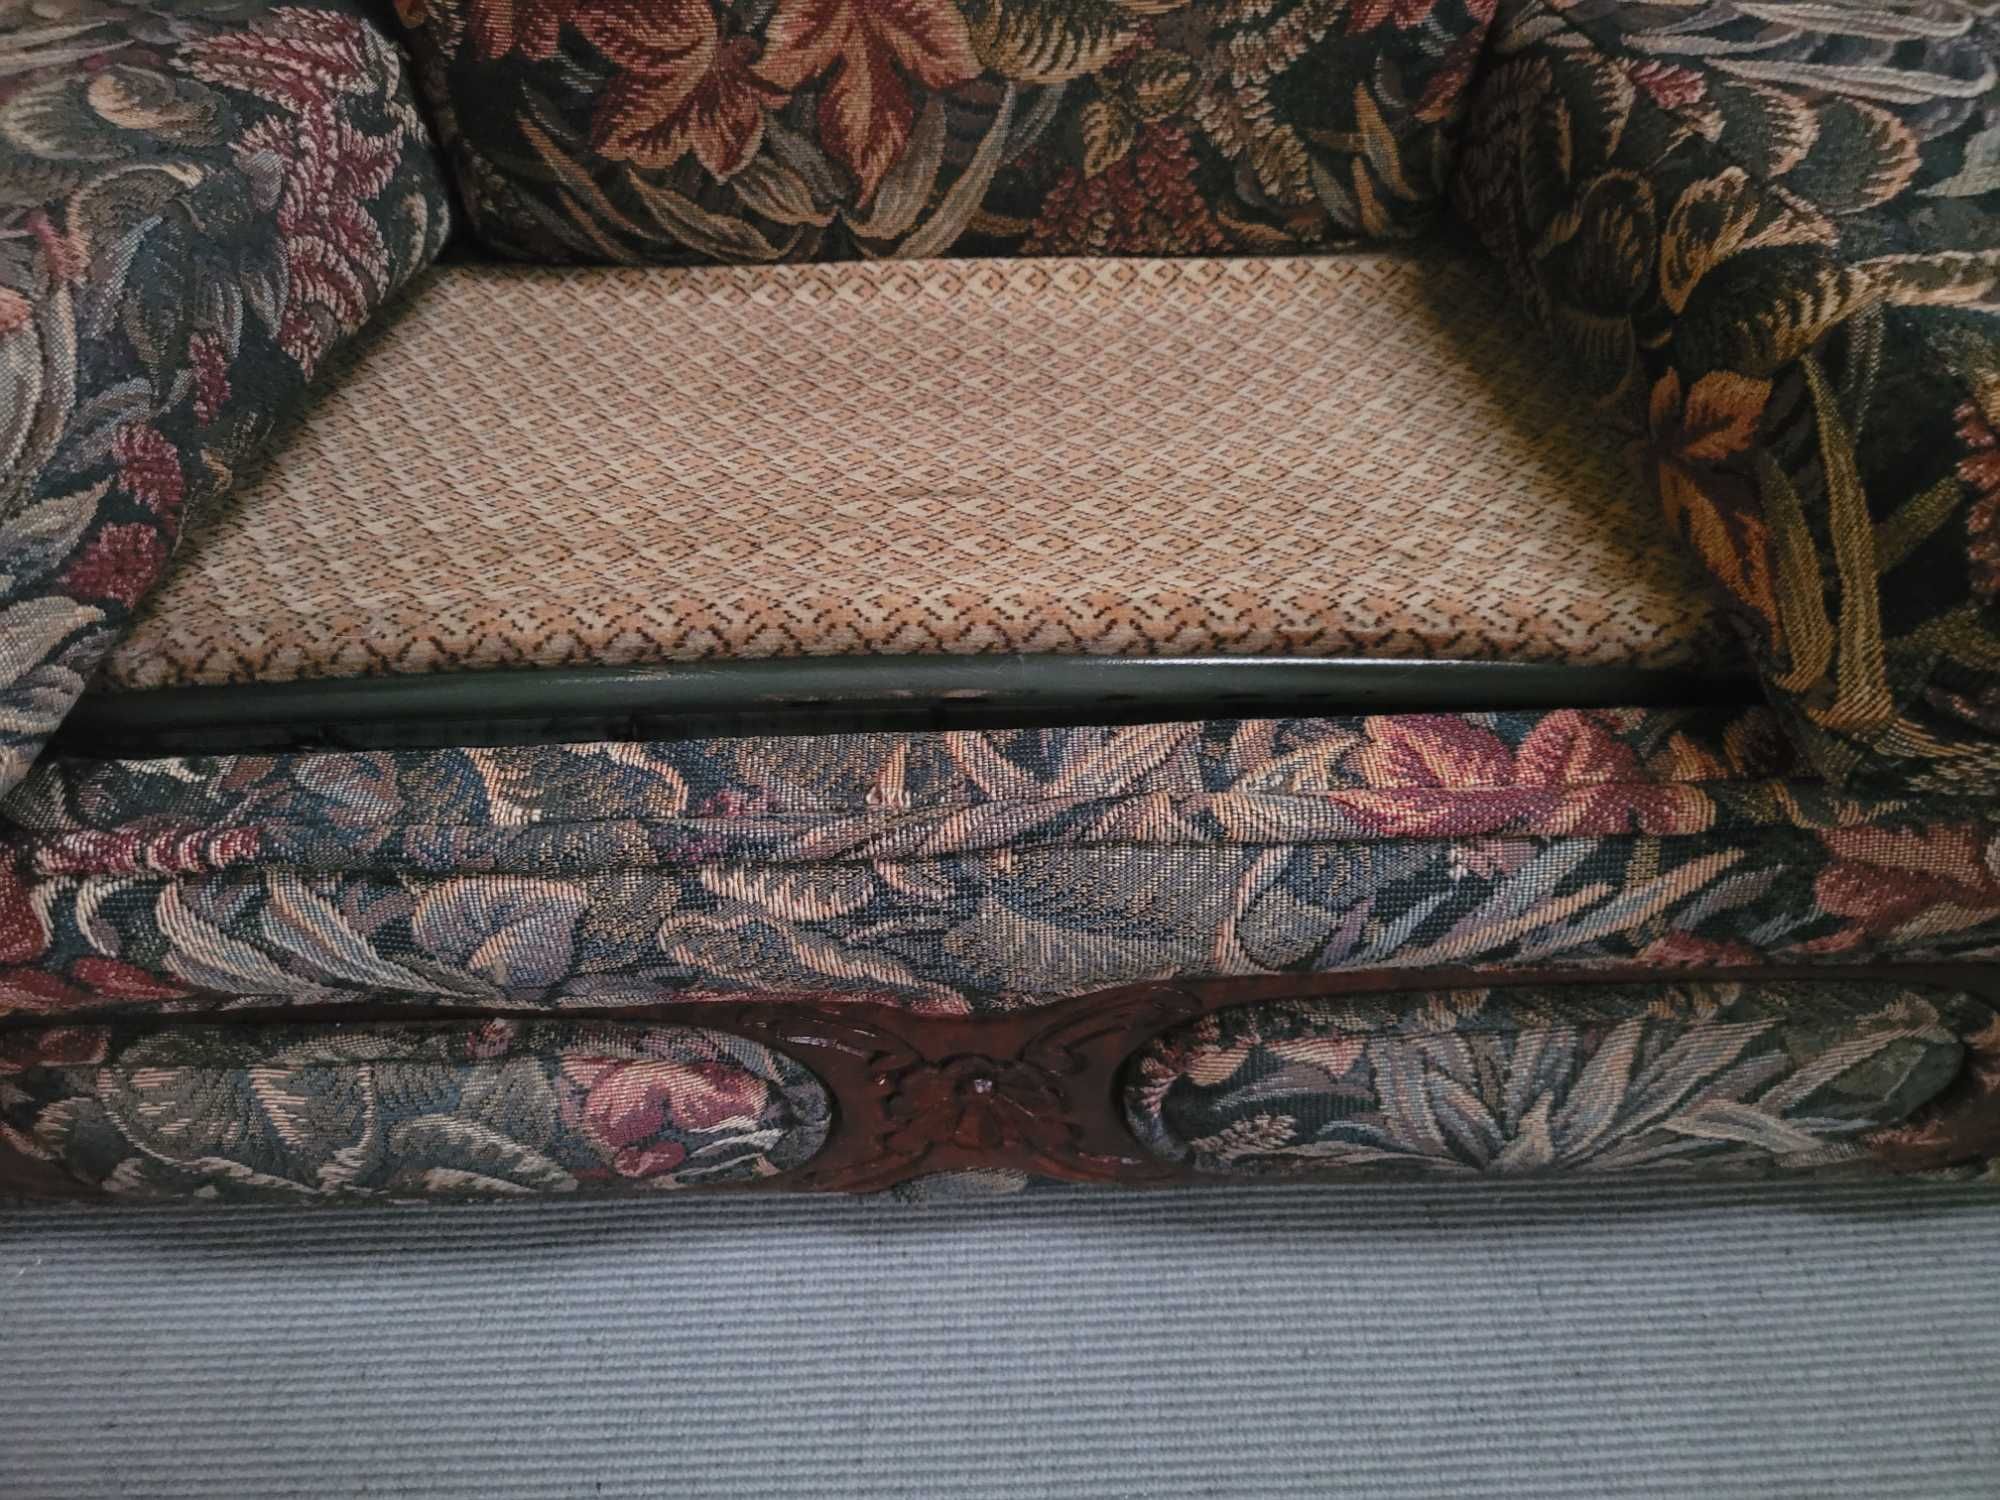 Sofá cama vintage - óptimo estado, sem qualquer zona rasgada